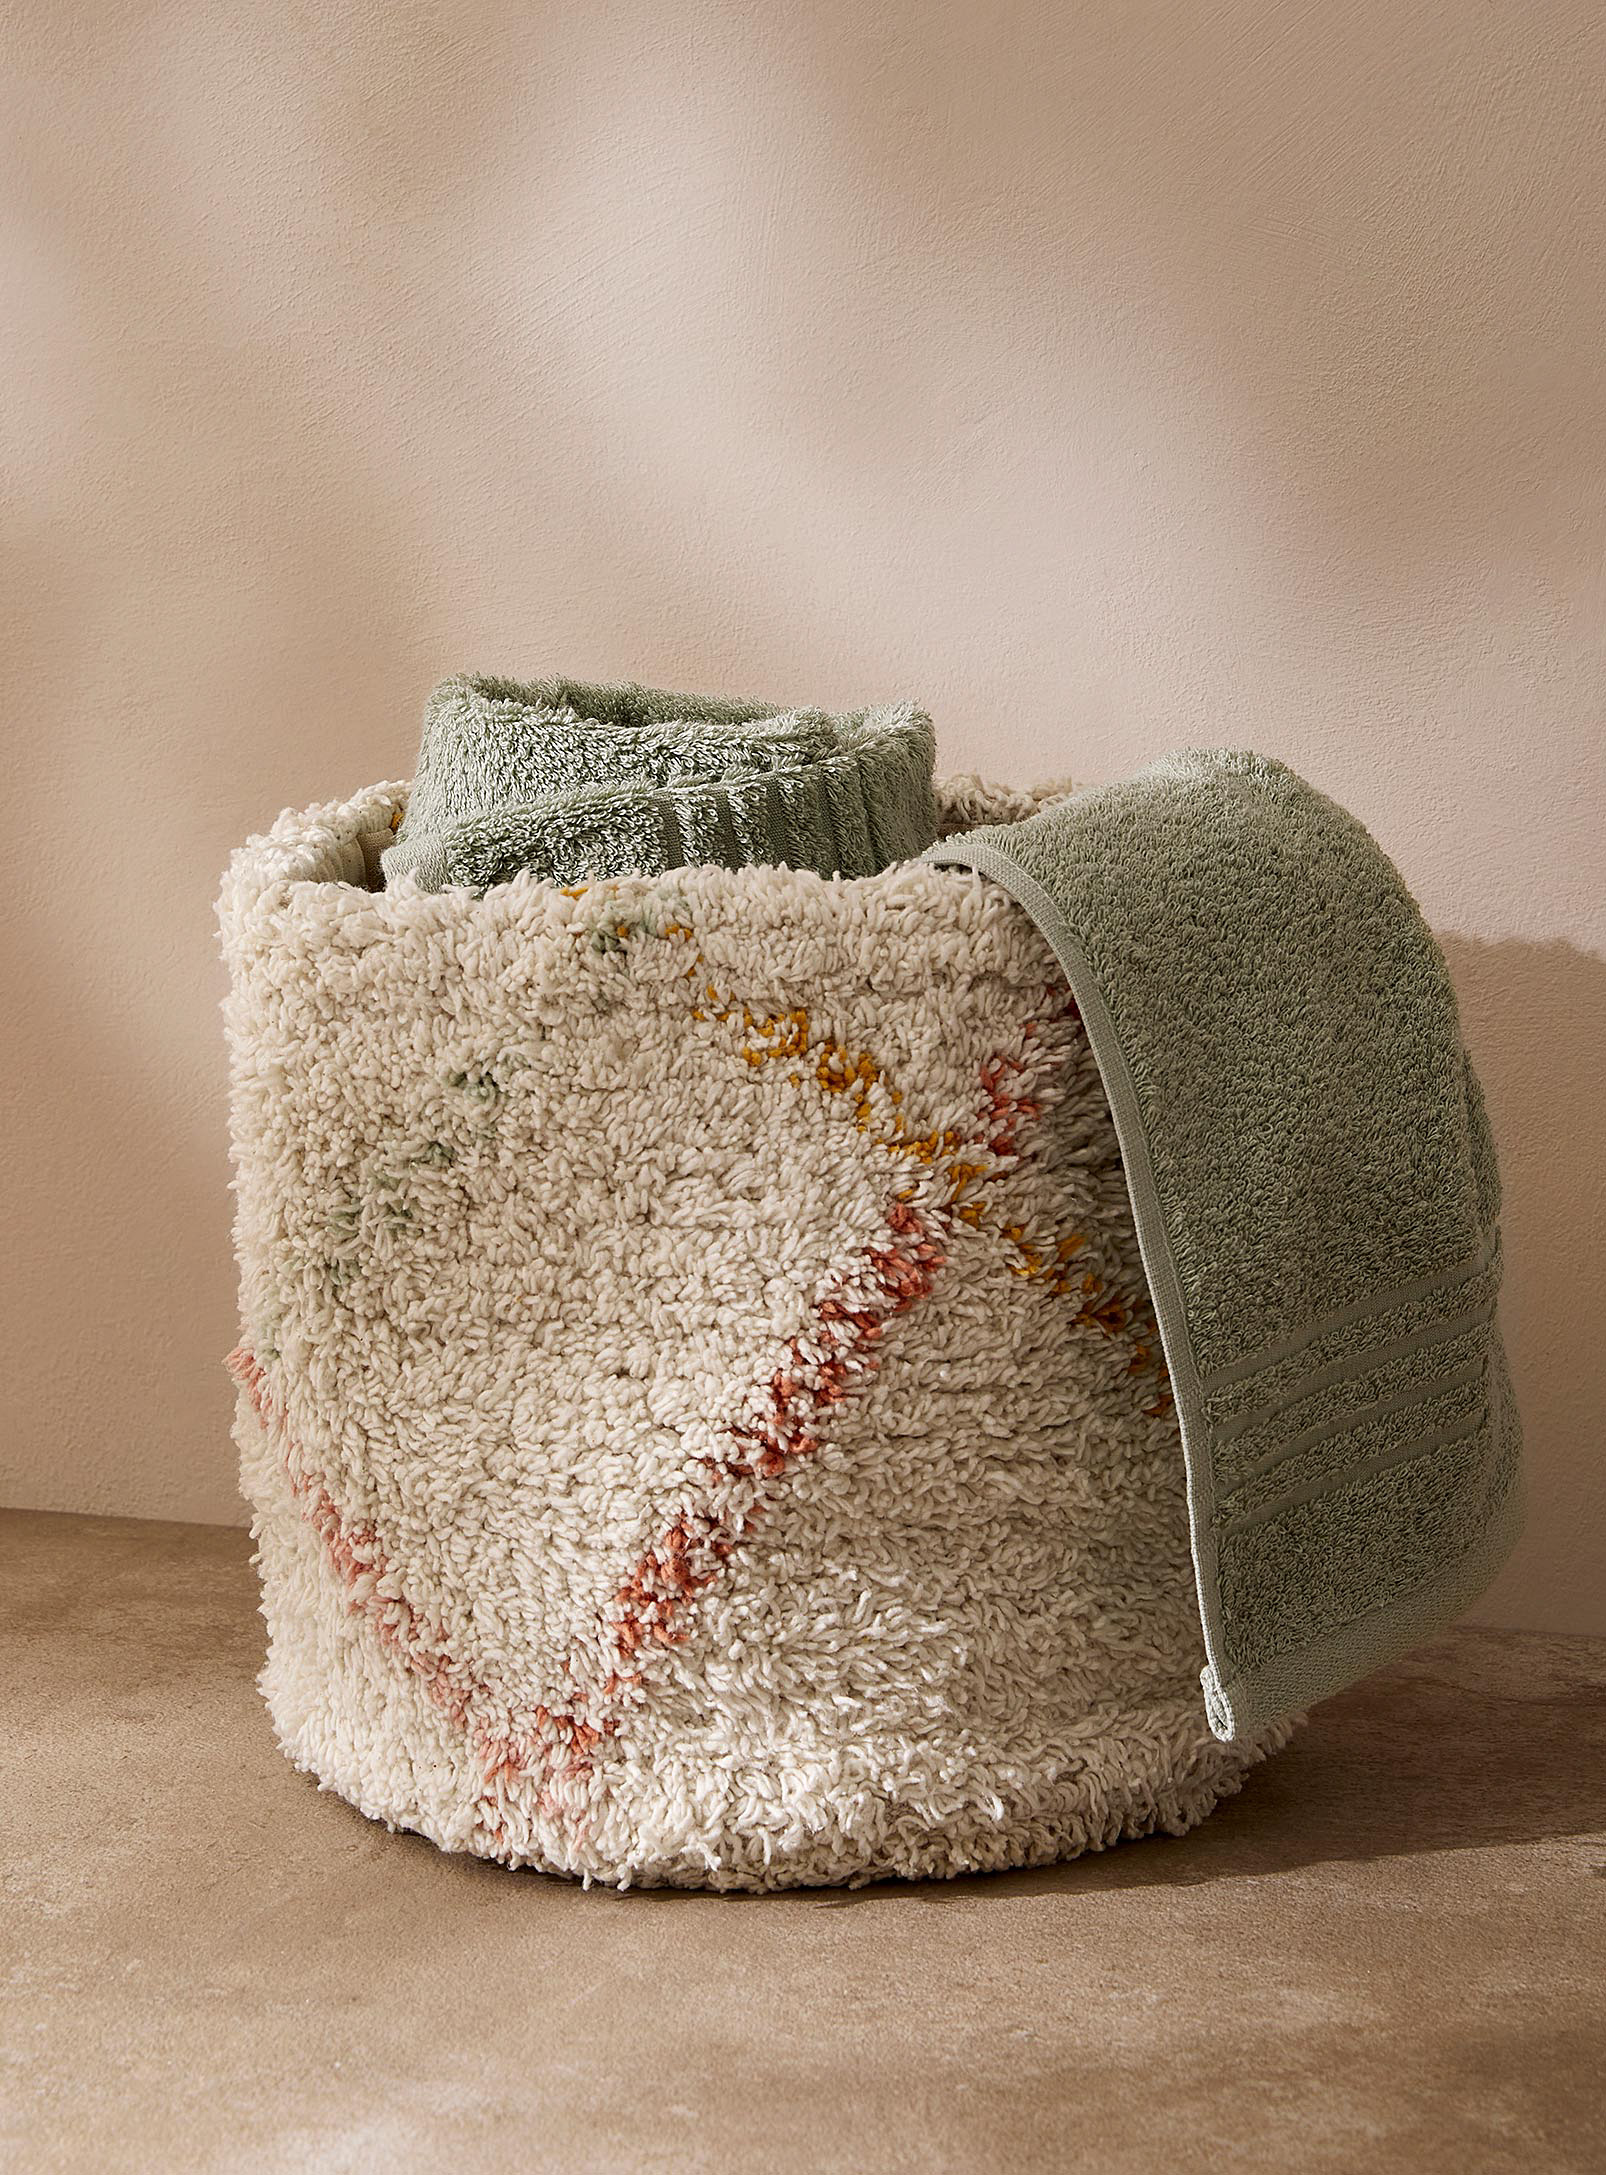 Simons Maison - Tufted cotton storage basket